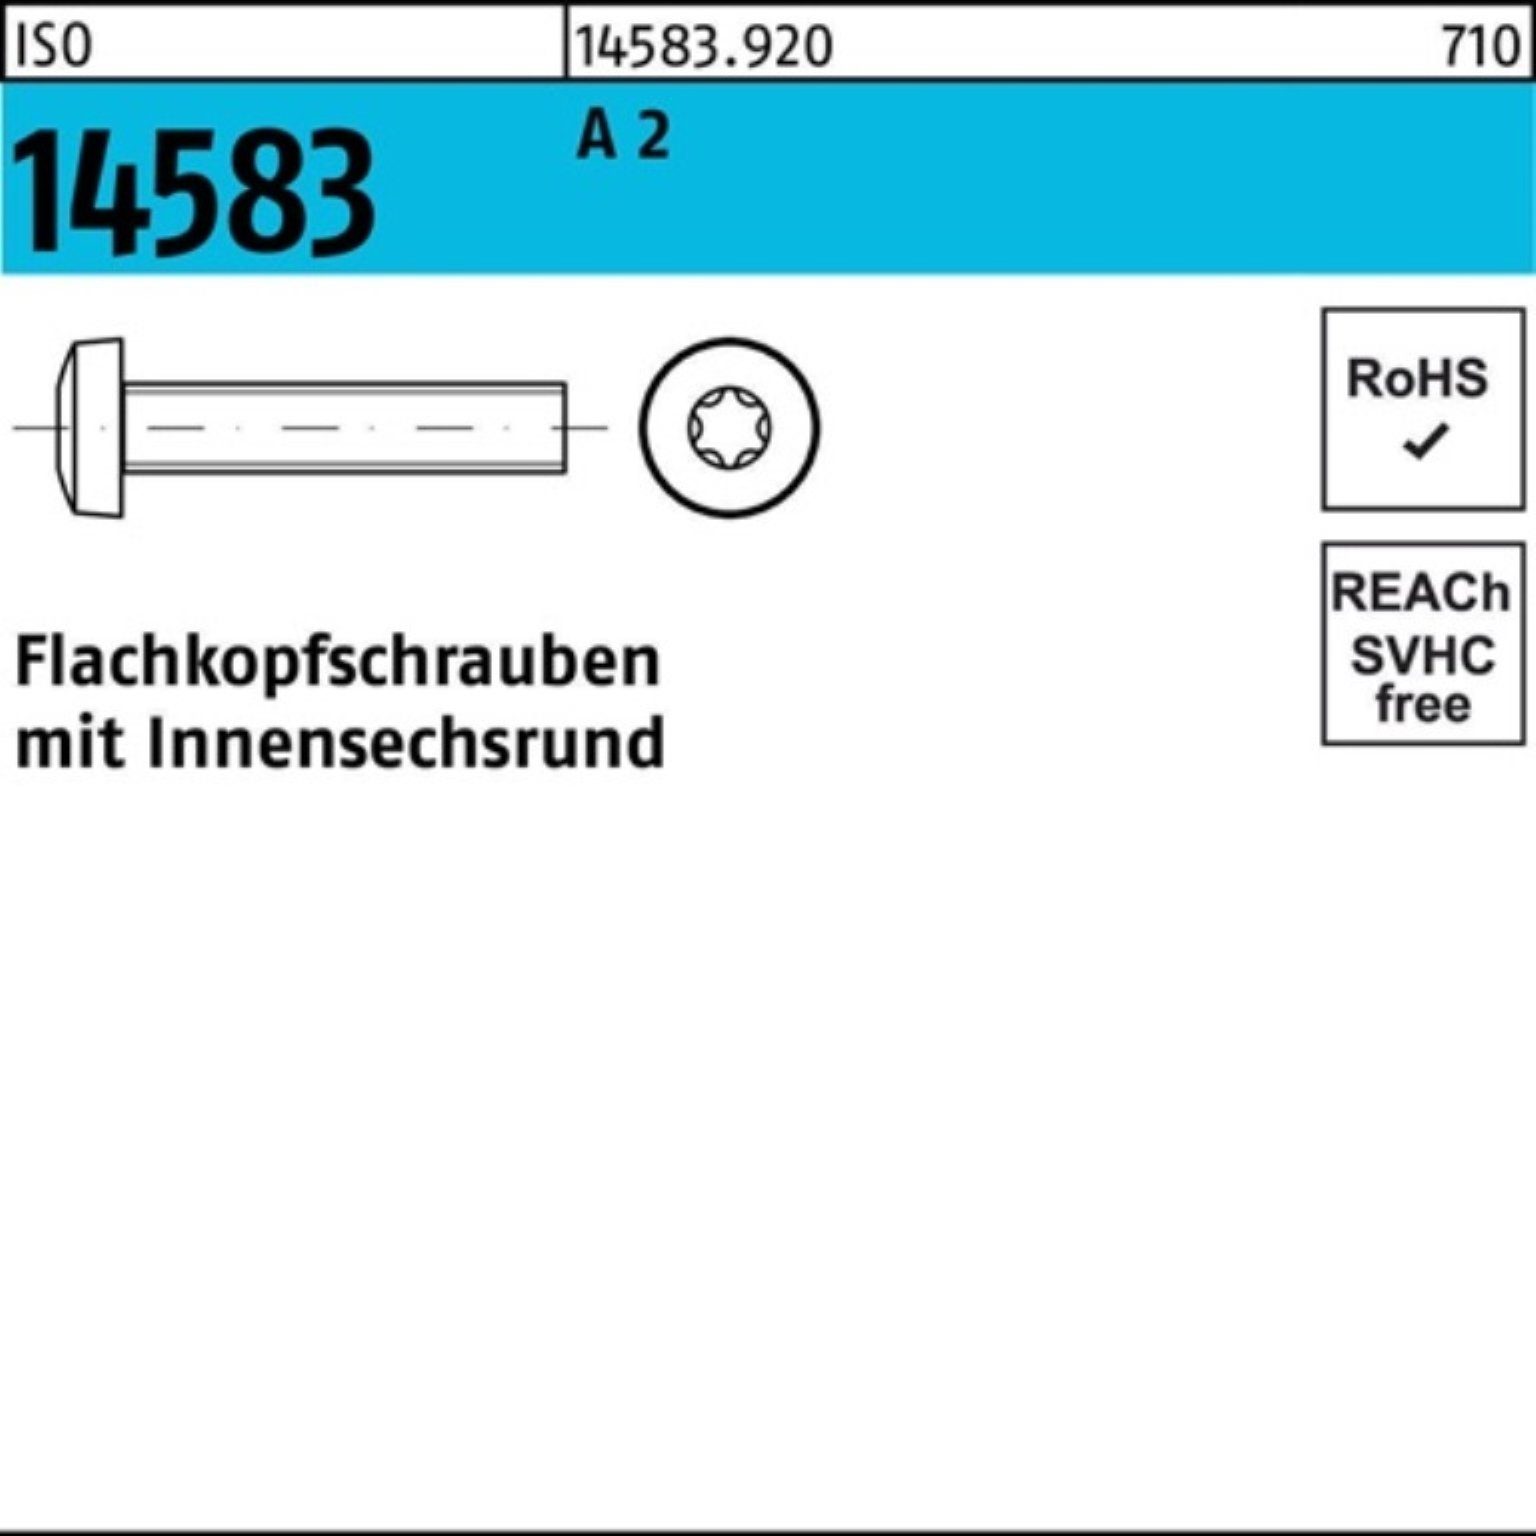 Reyher Schraube 500er 14583 M4x 2 1 Flachkopfschraube A 500 Pack 40 ISR ISO ISO Stück